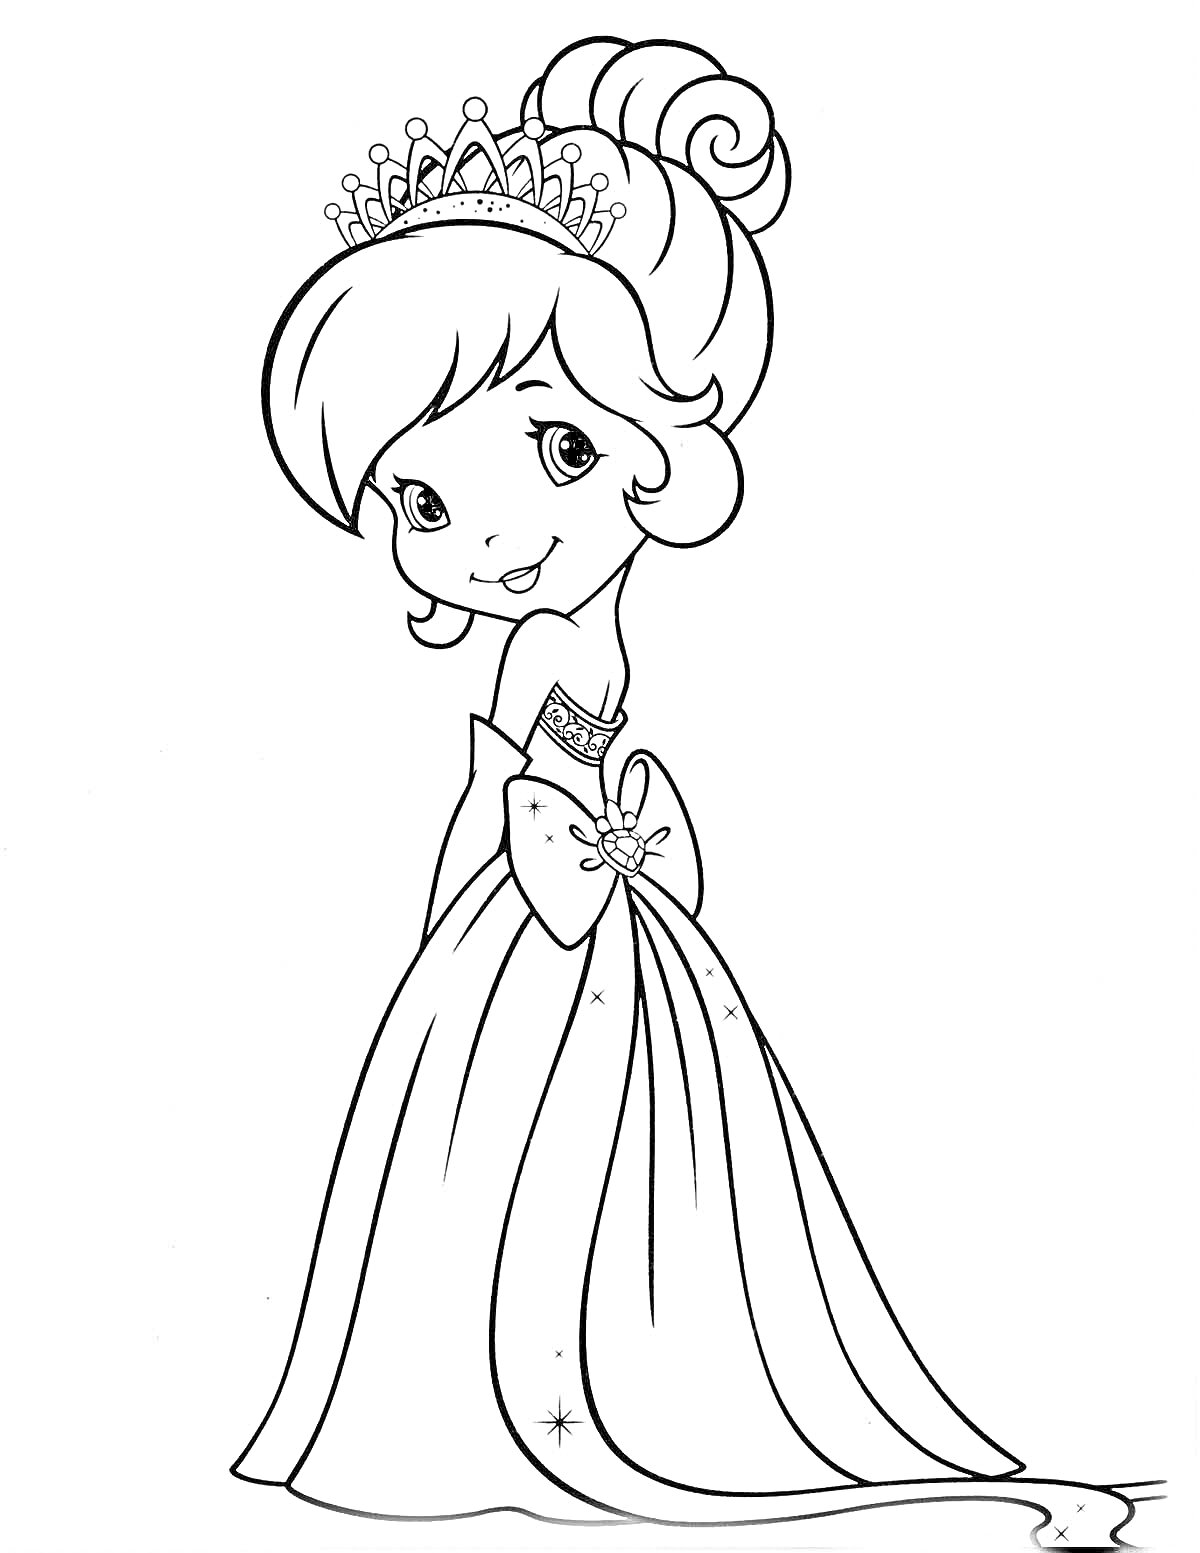 Раскраска Принцесса с короной, высоко собранной прической и платьем с бантом